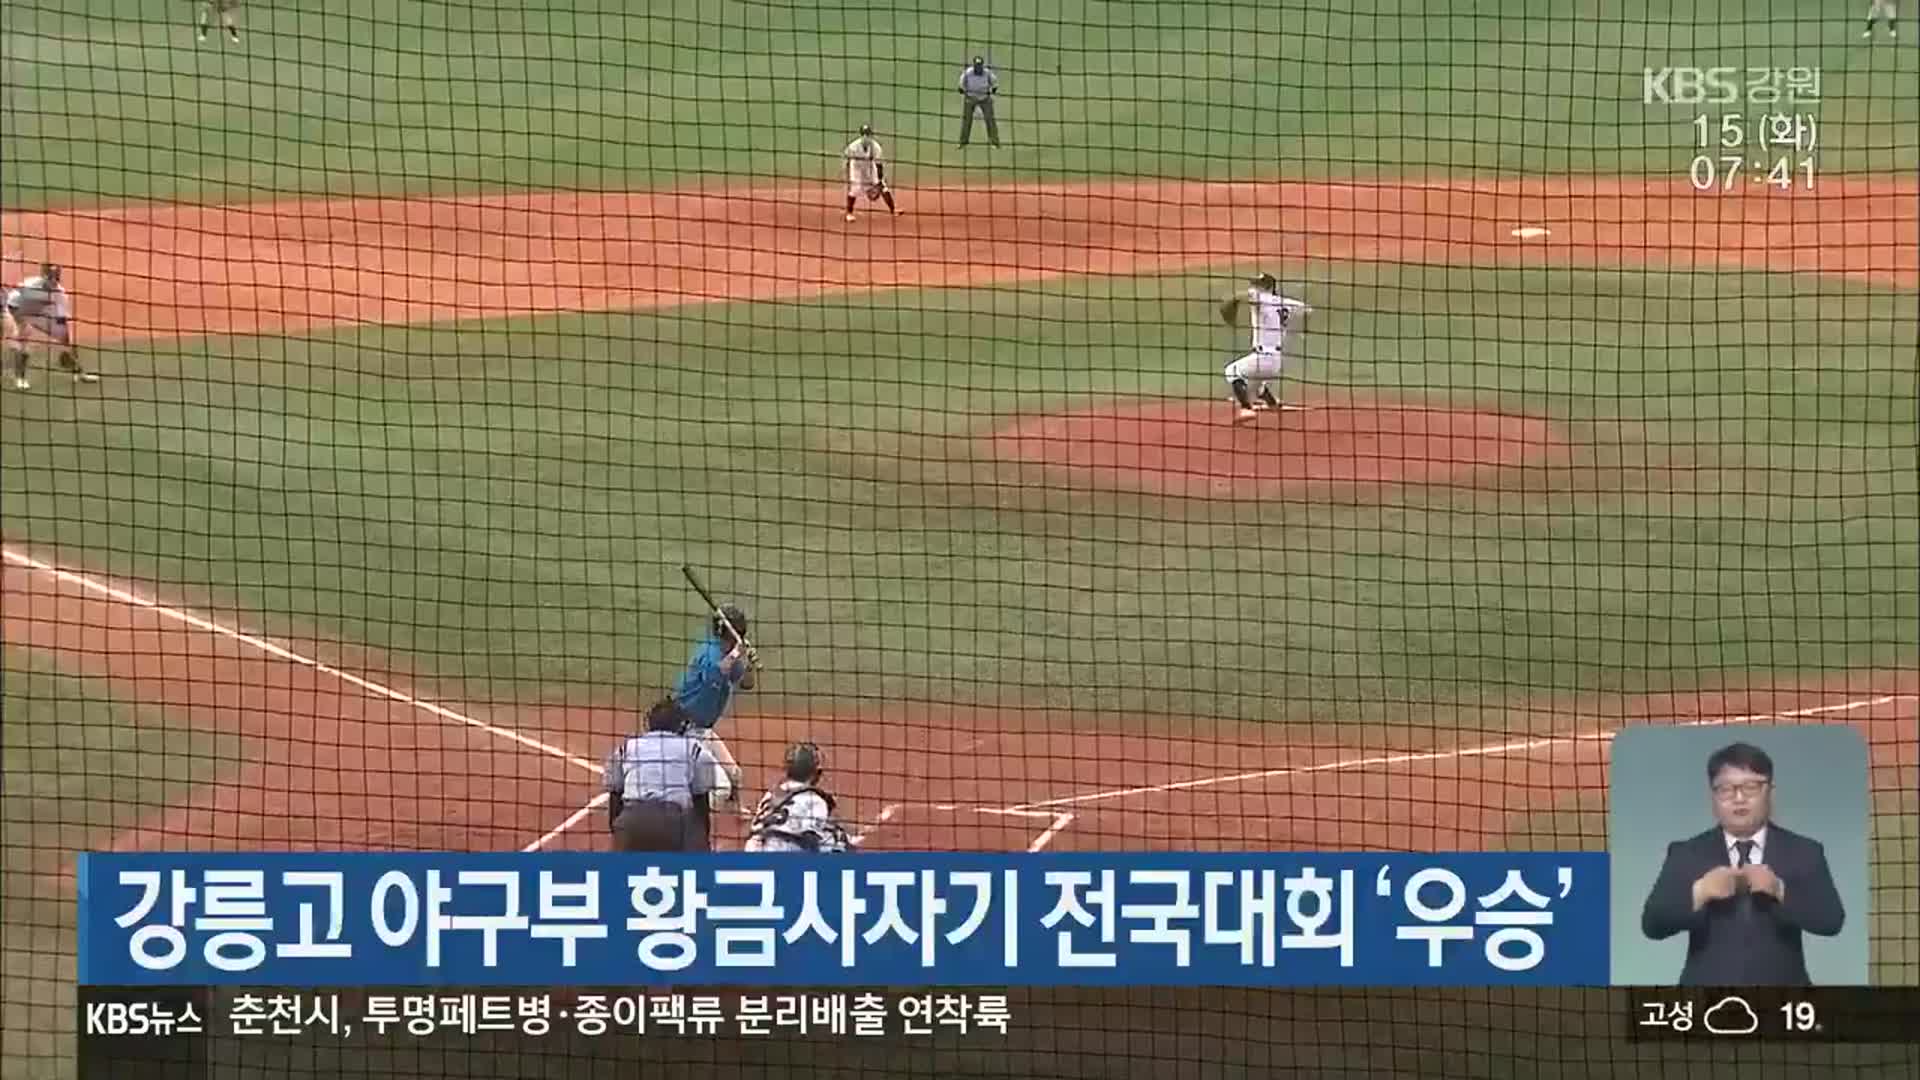 강릉고 야구부 황금사자기 전국대회 ‘우승’